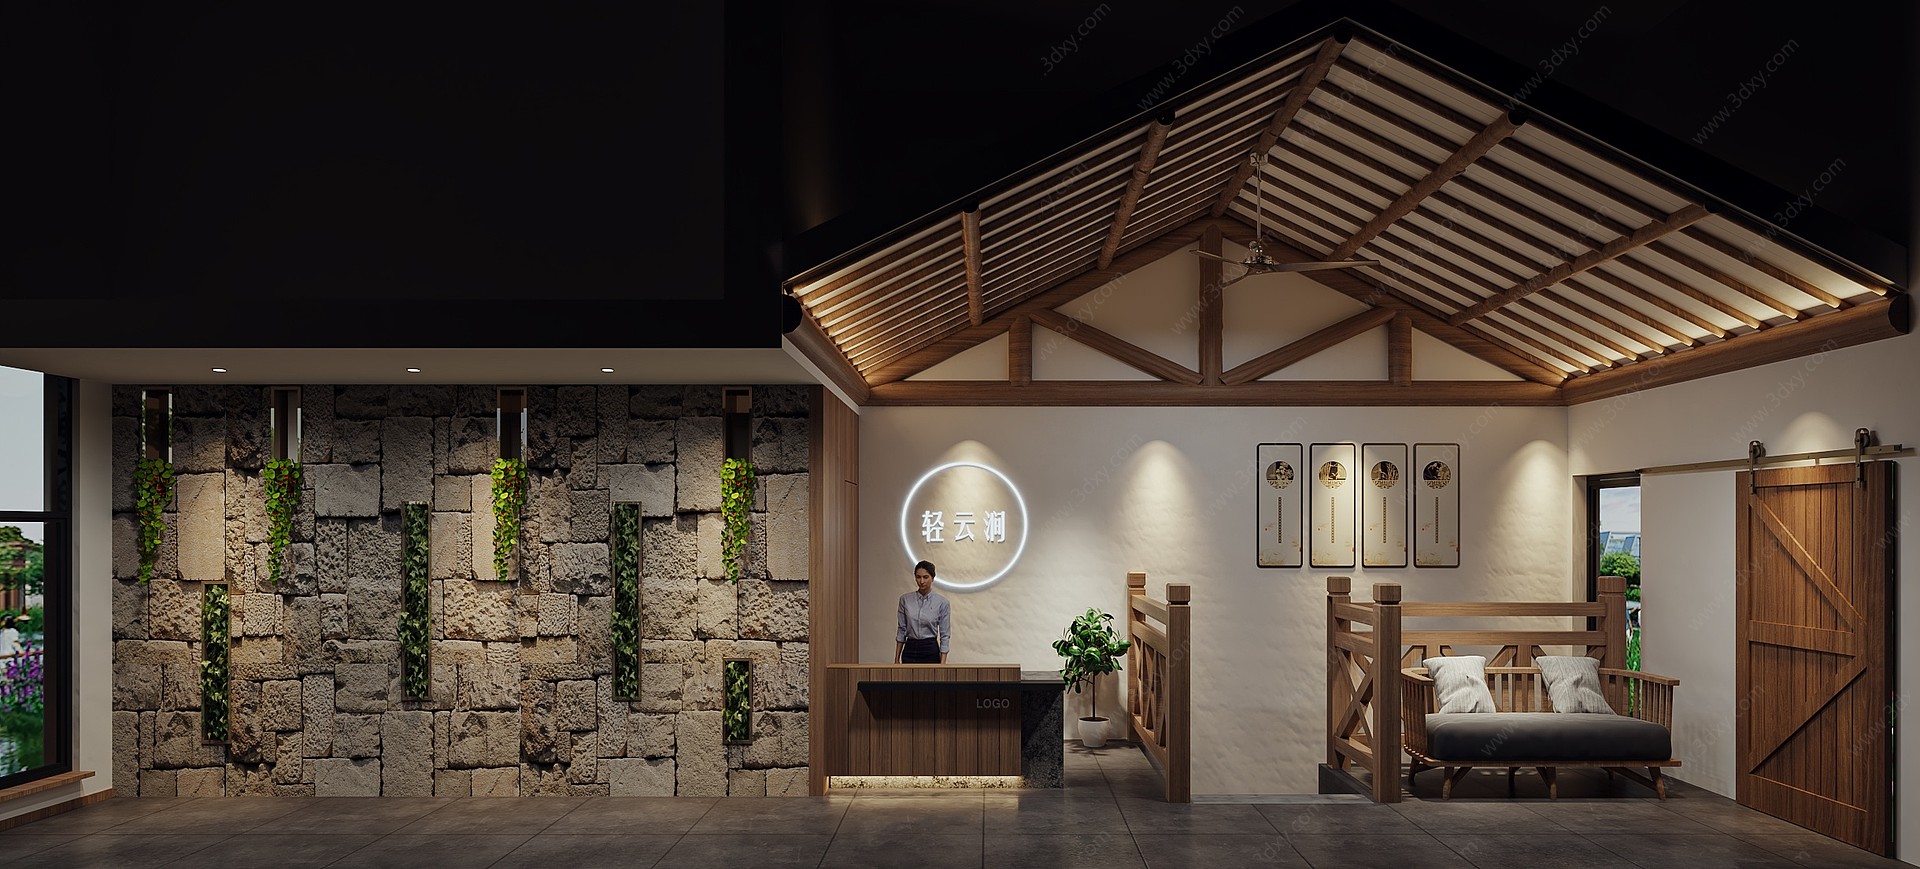 北欧民宿餐厅3D模型